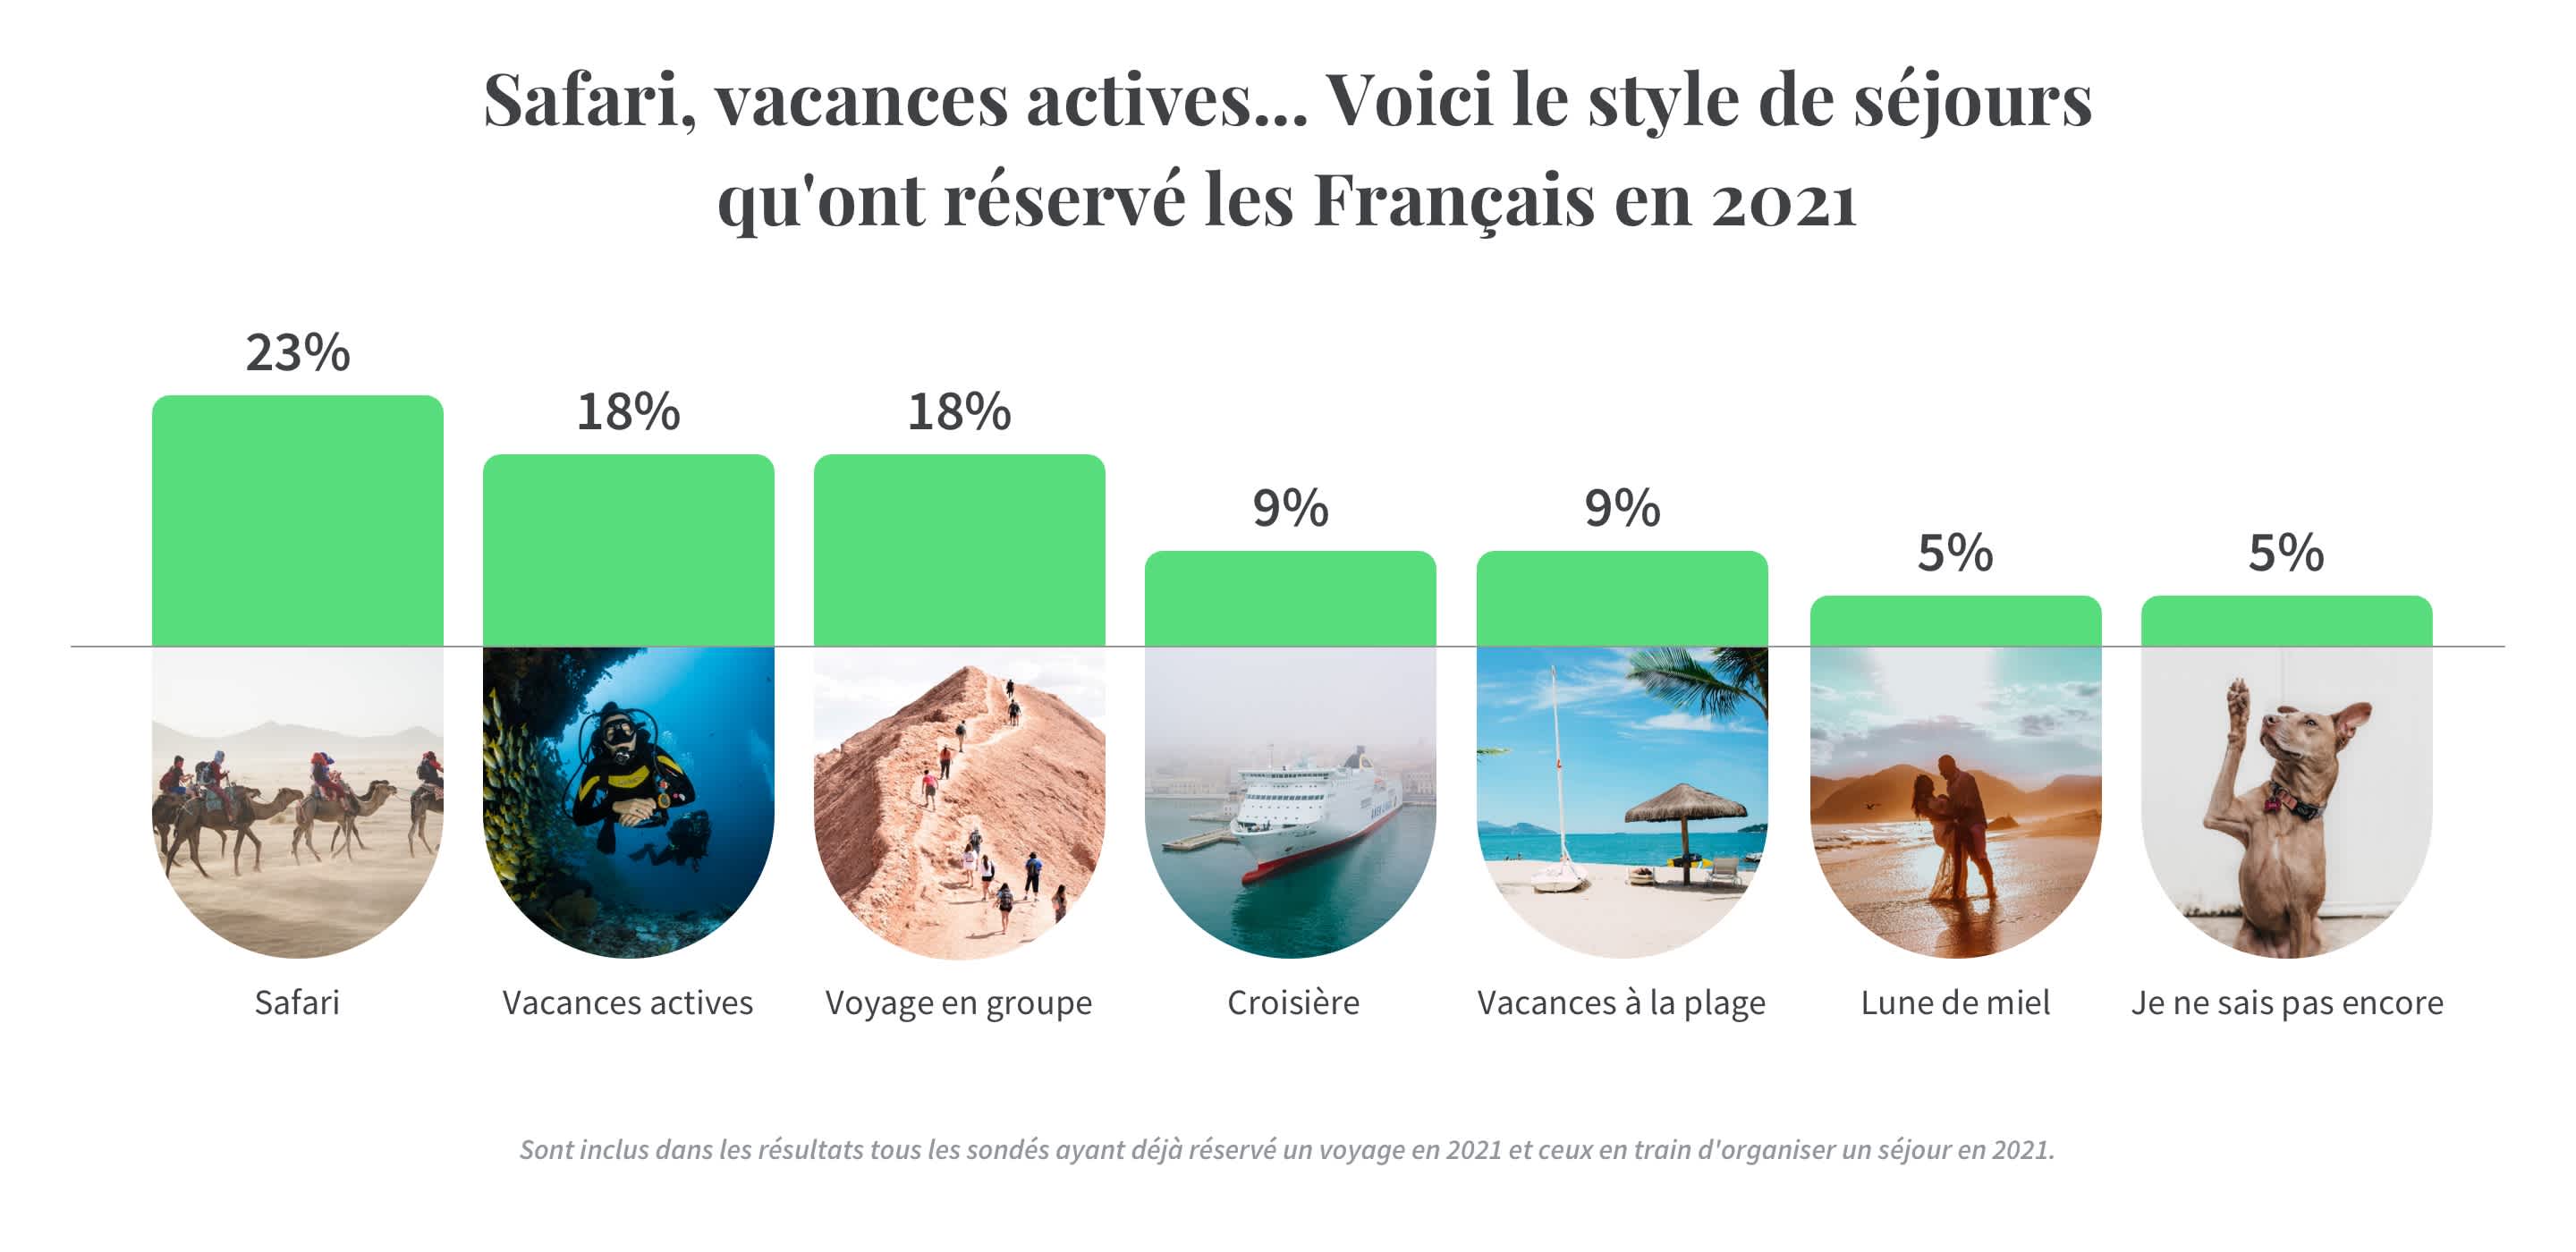 Infographie illustrant le types de voyages réservés par les Français en 2021 (Safari, vacances actives...). Source : Sondage Tourlane.fr sur les Tendances de voyages en 2021.